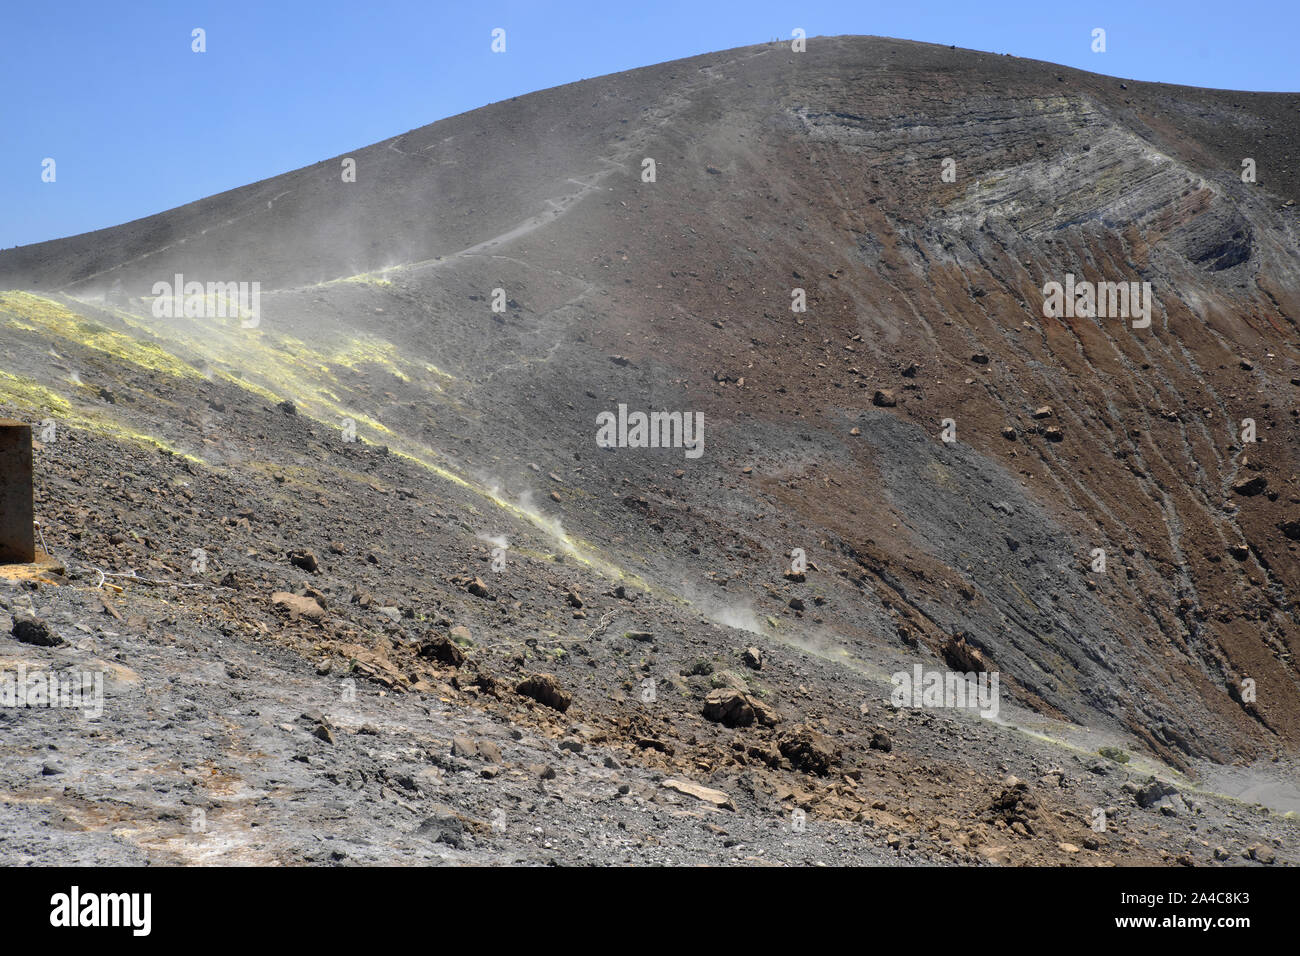 Les fumerolles de soufre et de chlore croûtes sur le bord du cratère de Gran Cratere sur l'île de Vulcano, Iles Eoliennes, Sicile, Italie. Banque D'Images